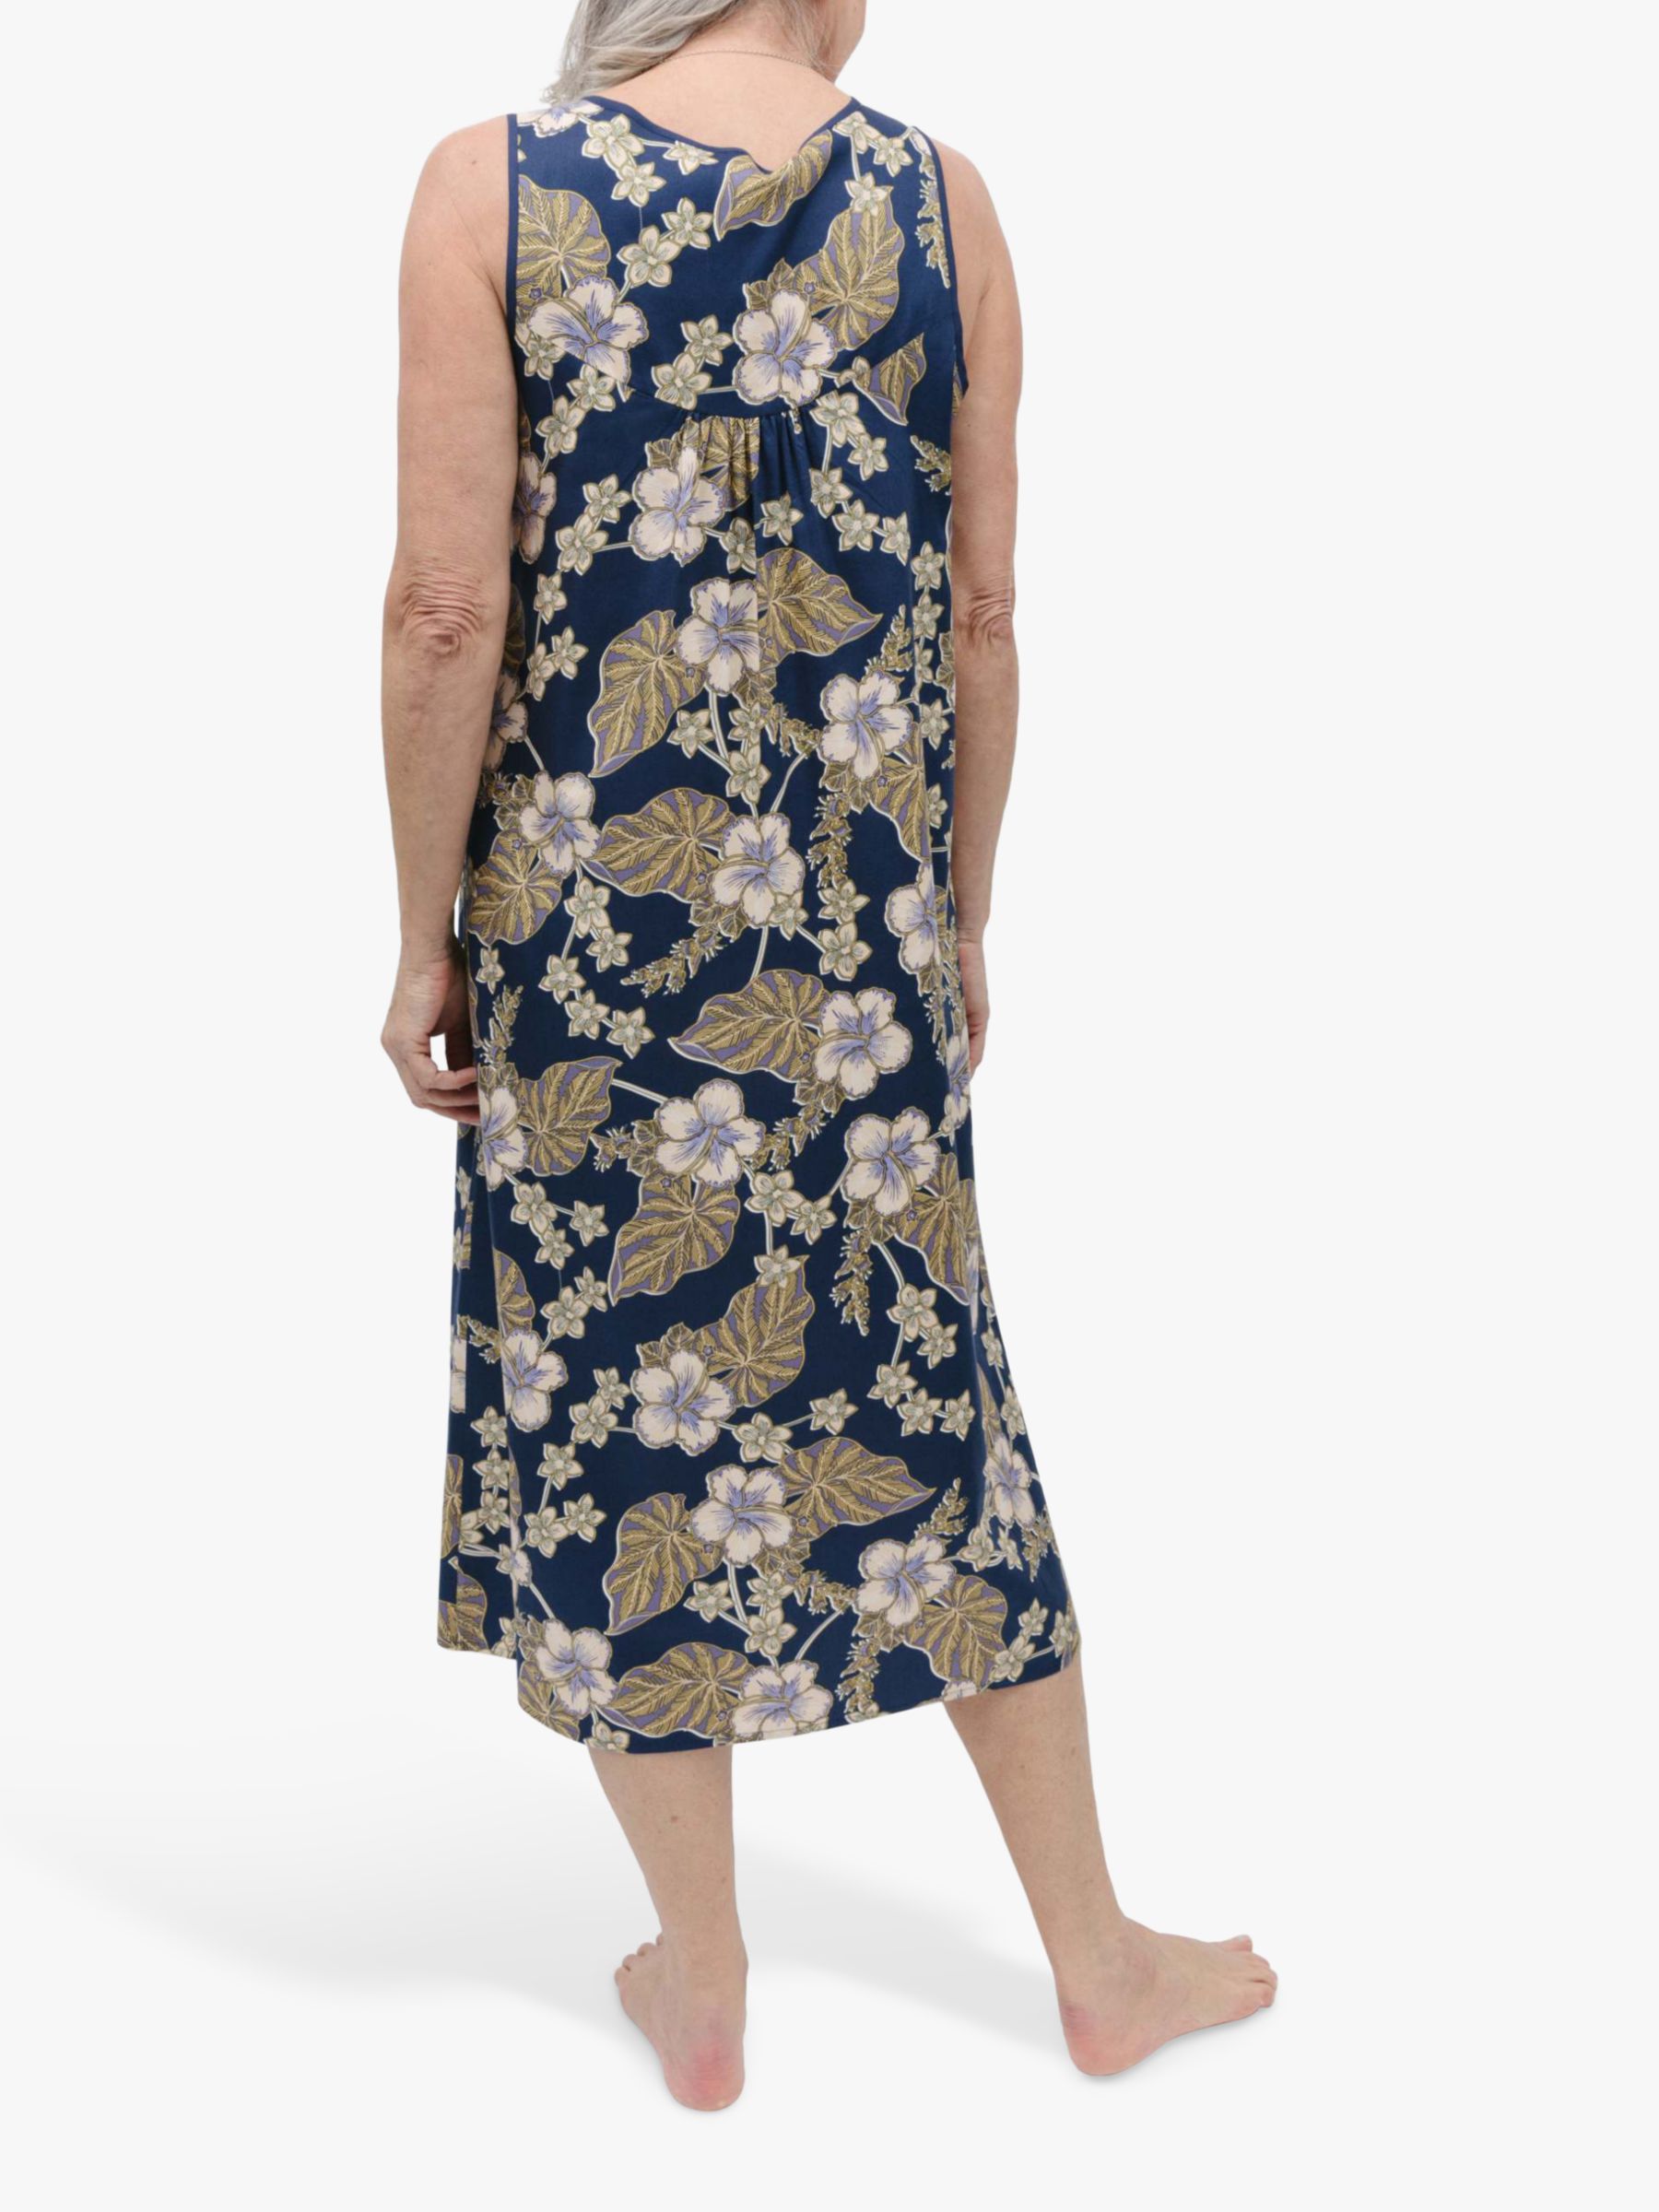 Buy Nora Rose by Cyberjammies Winnie Floral Print Nightdress, Navy/Multi Online at johnlewis.com